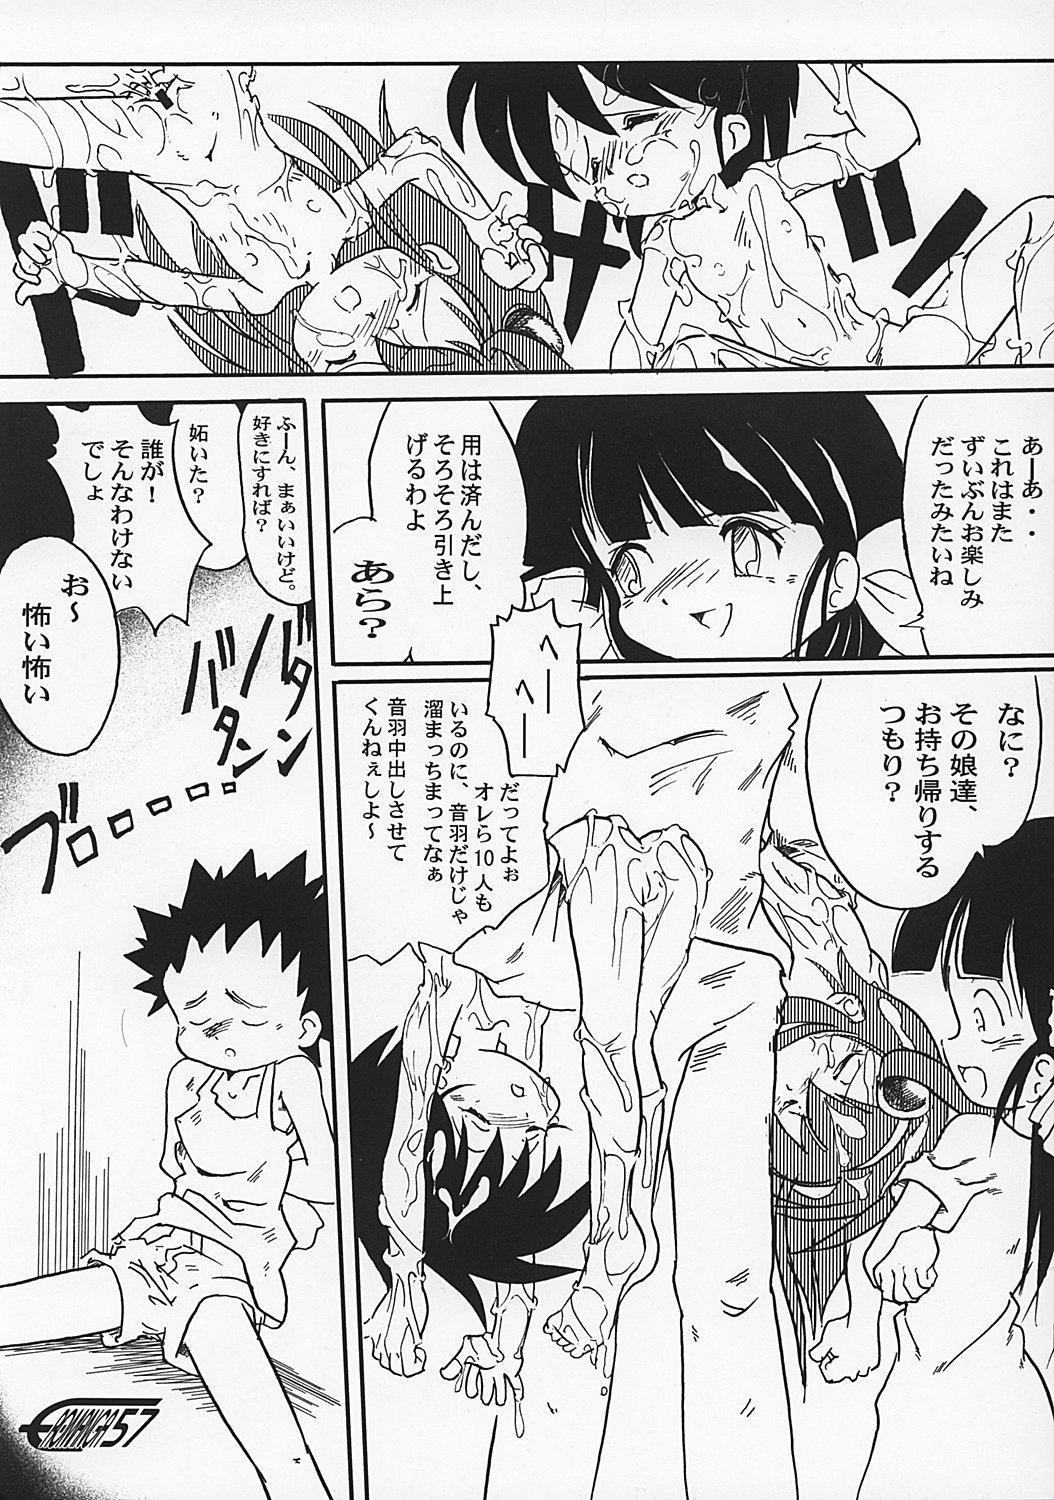 Manga Science 2 - Onnanoko no Himitsu 55